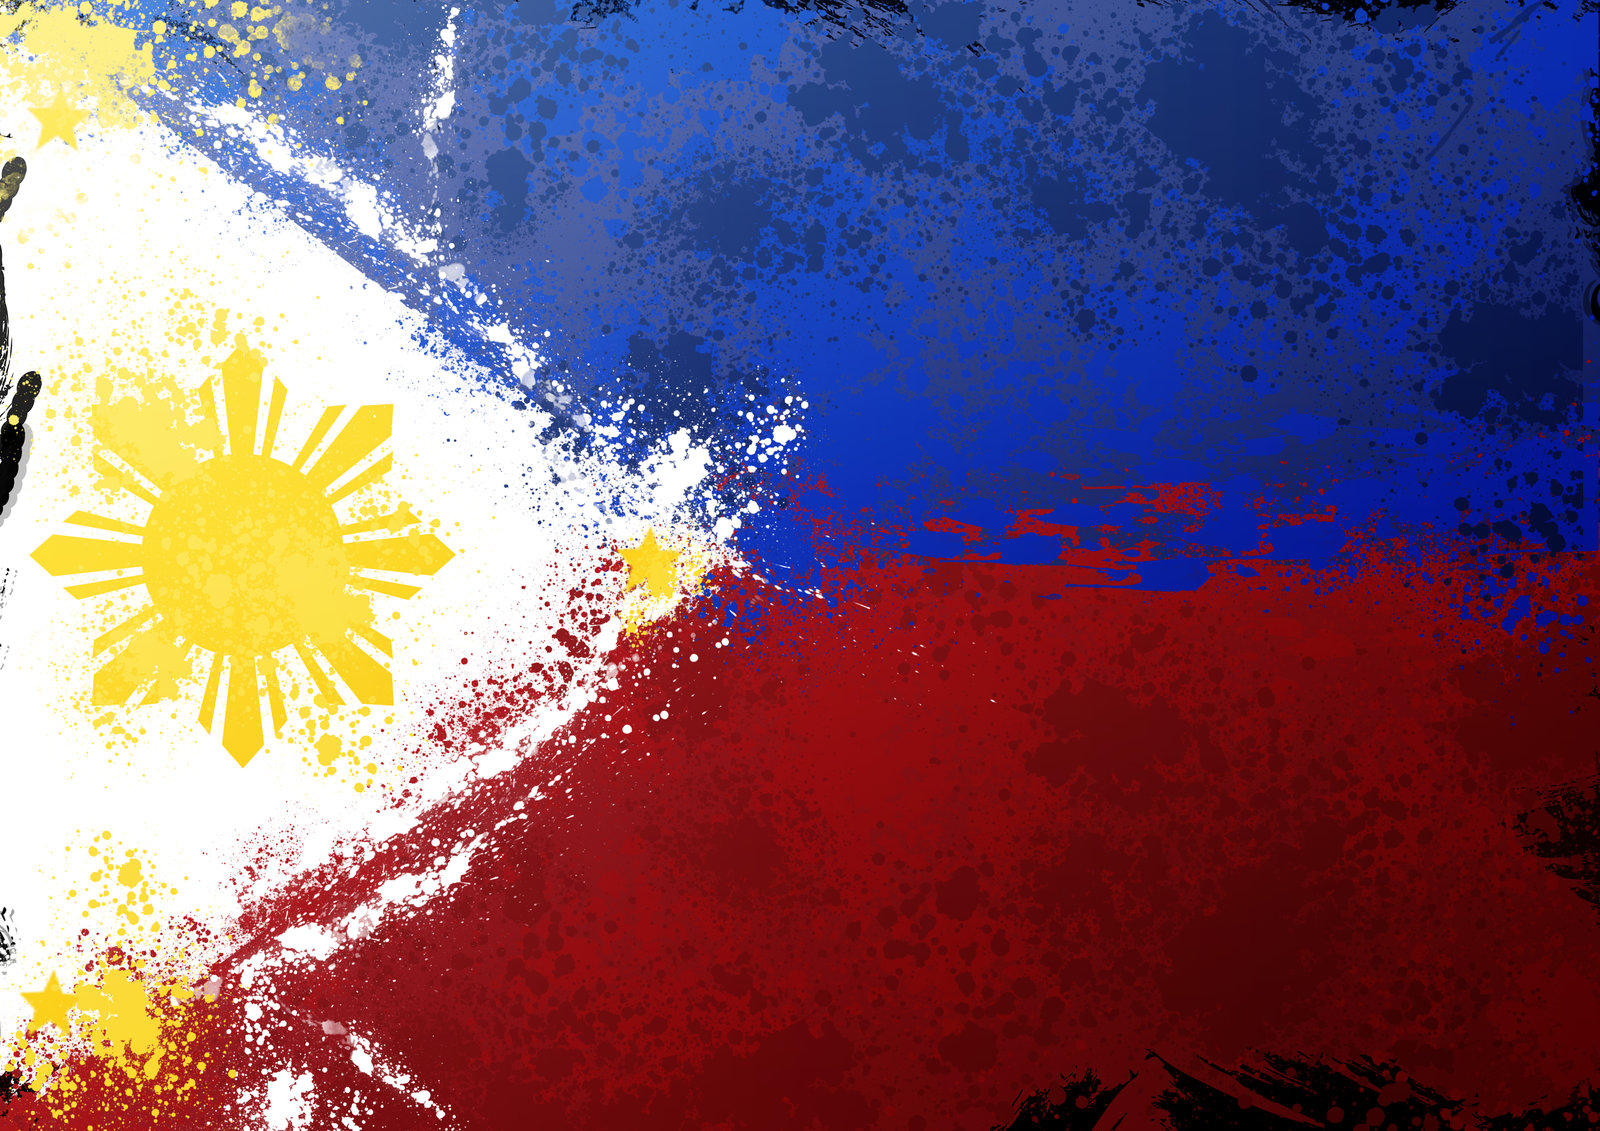 free-download-philippine-flag-splatter-by-schizophrenique-on-1600x1131